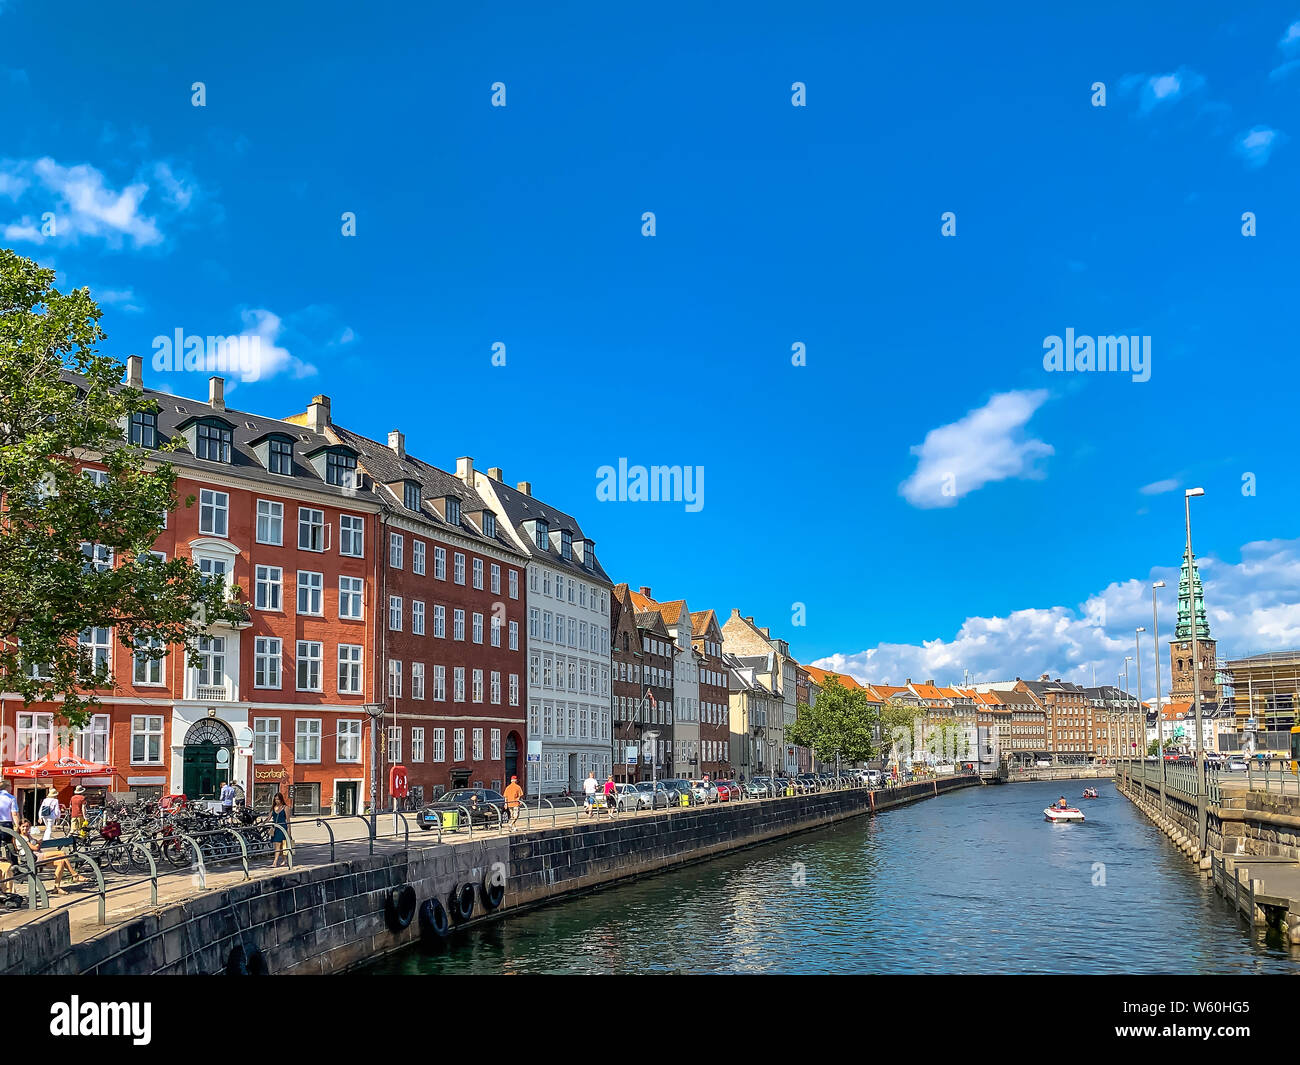 29 juillet 2019 : Copenhague, Danemark : Belle skyline de canal de Copenhague sur une belle journée d'été Banque D'Images